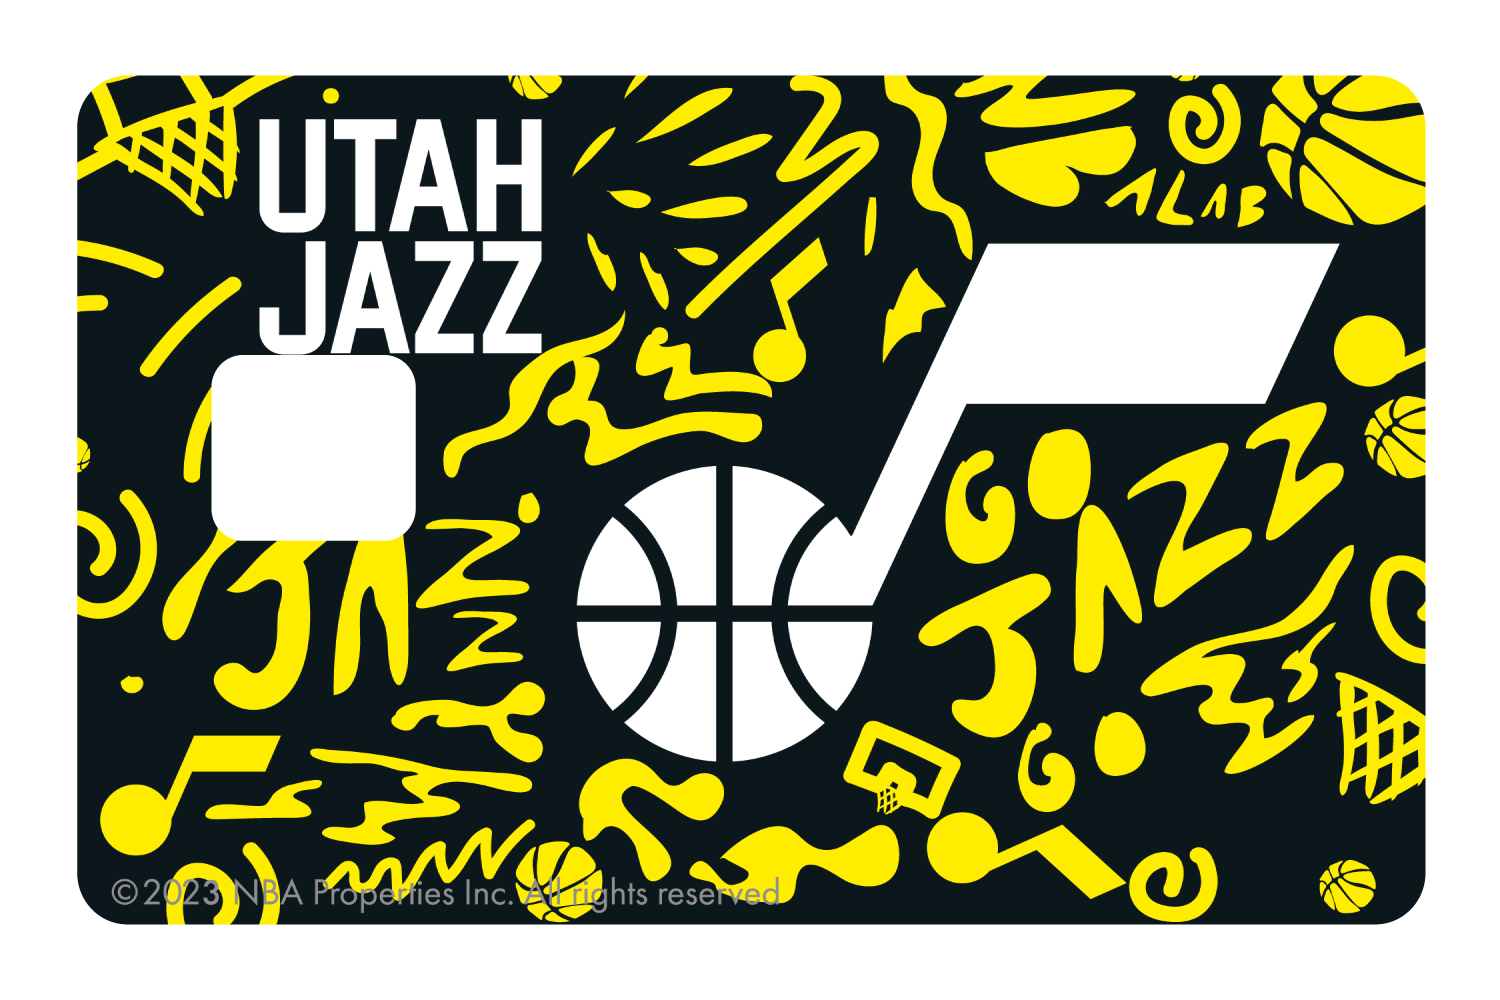 Utah Jazz: Team Mural